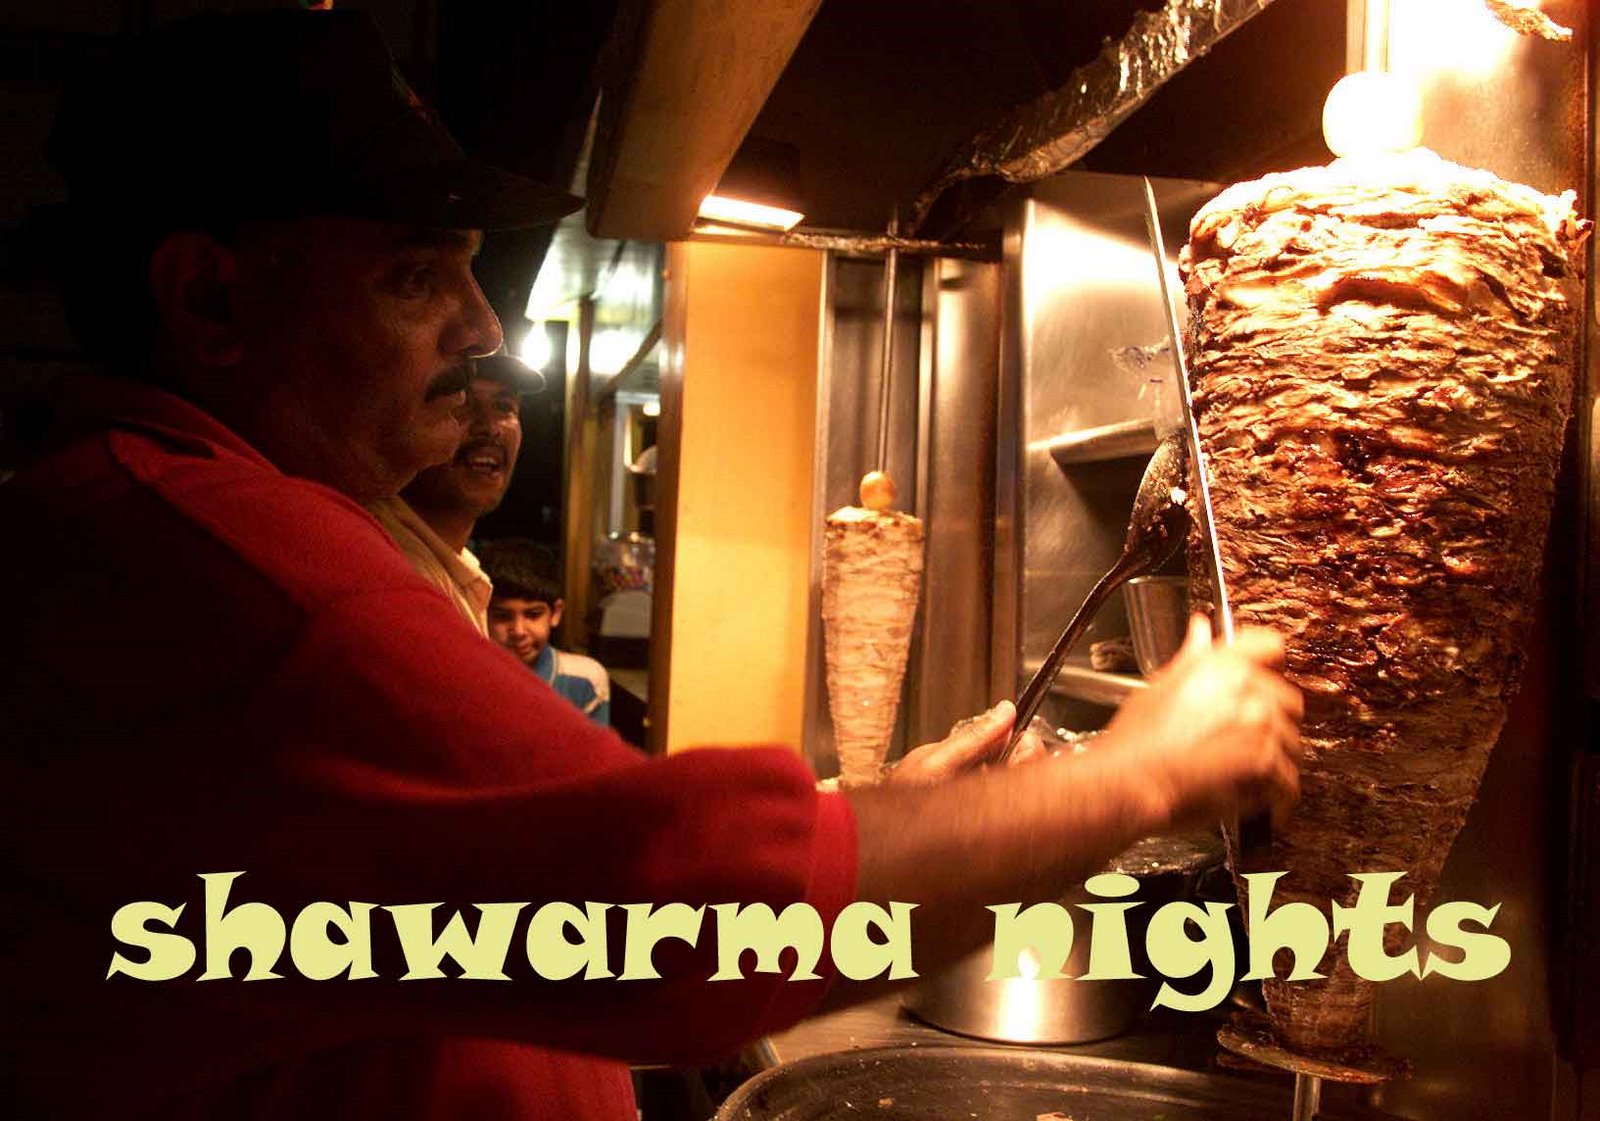 Shawarma Nights